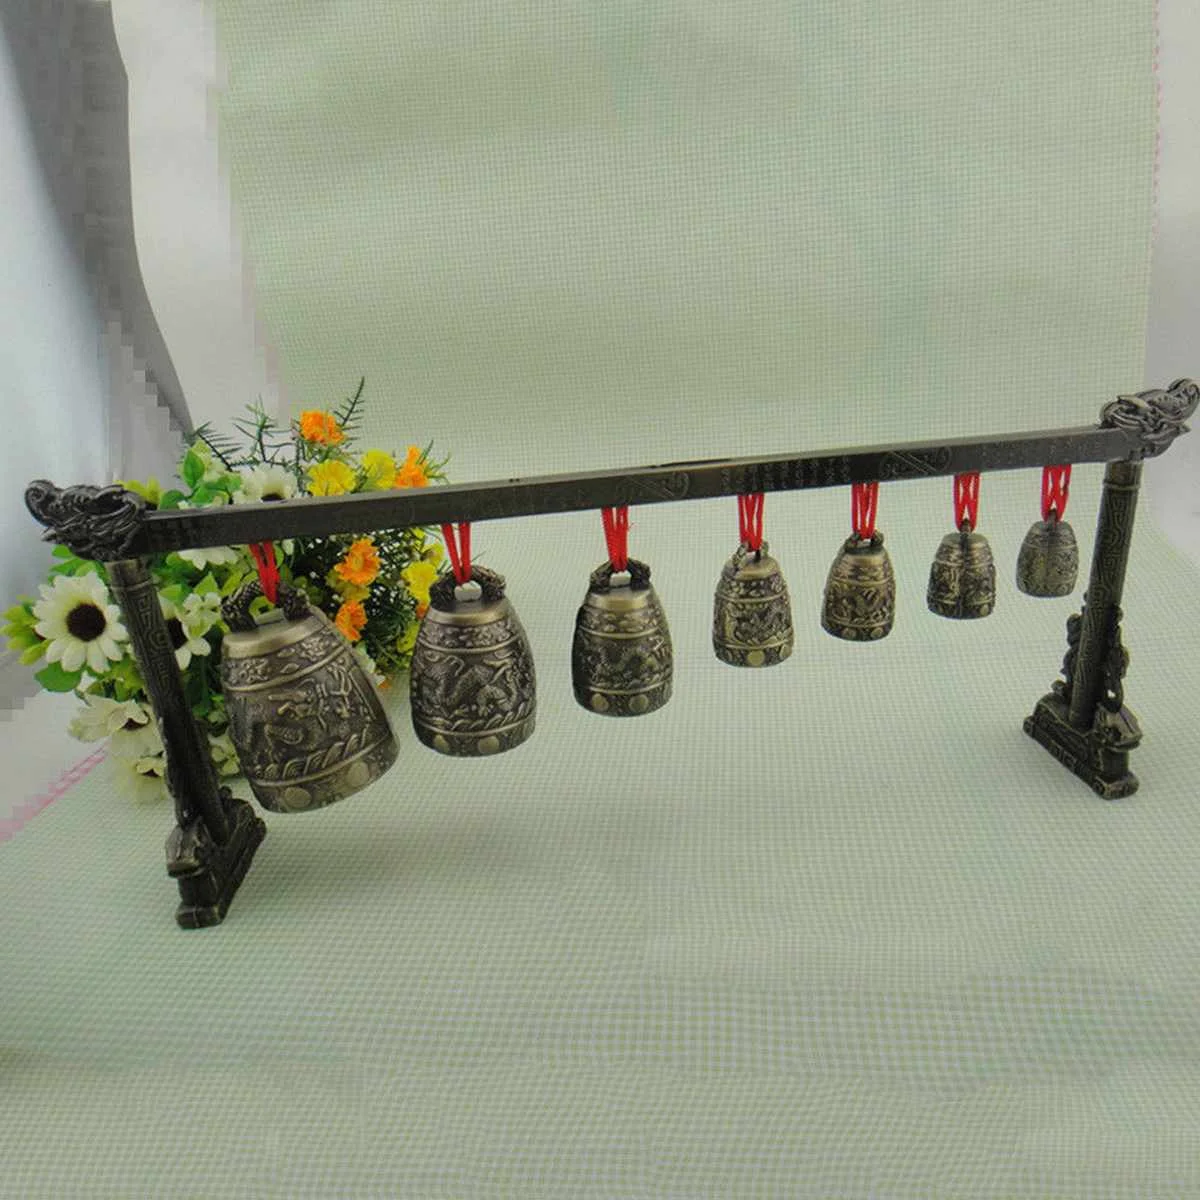 Китайские Glockenspiel колокольчики, Латунные Колокольчики, бронзовая посуда, древние китайские мини-музыкальные инструменты, 7 круглых медных колокольчиков и Crandall